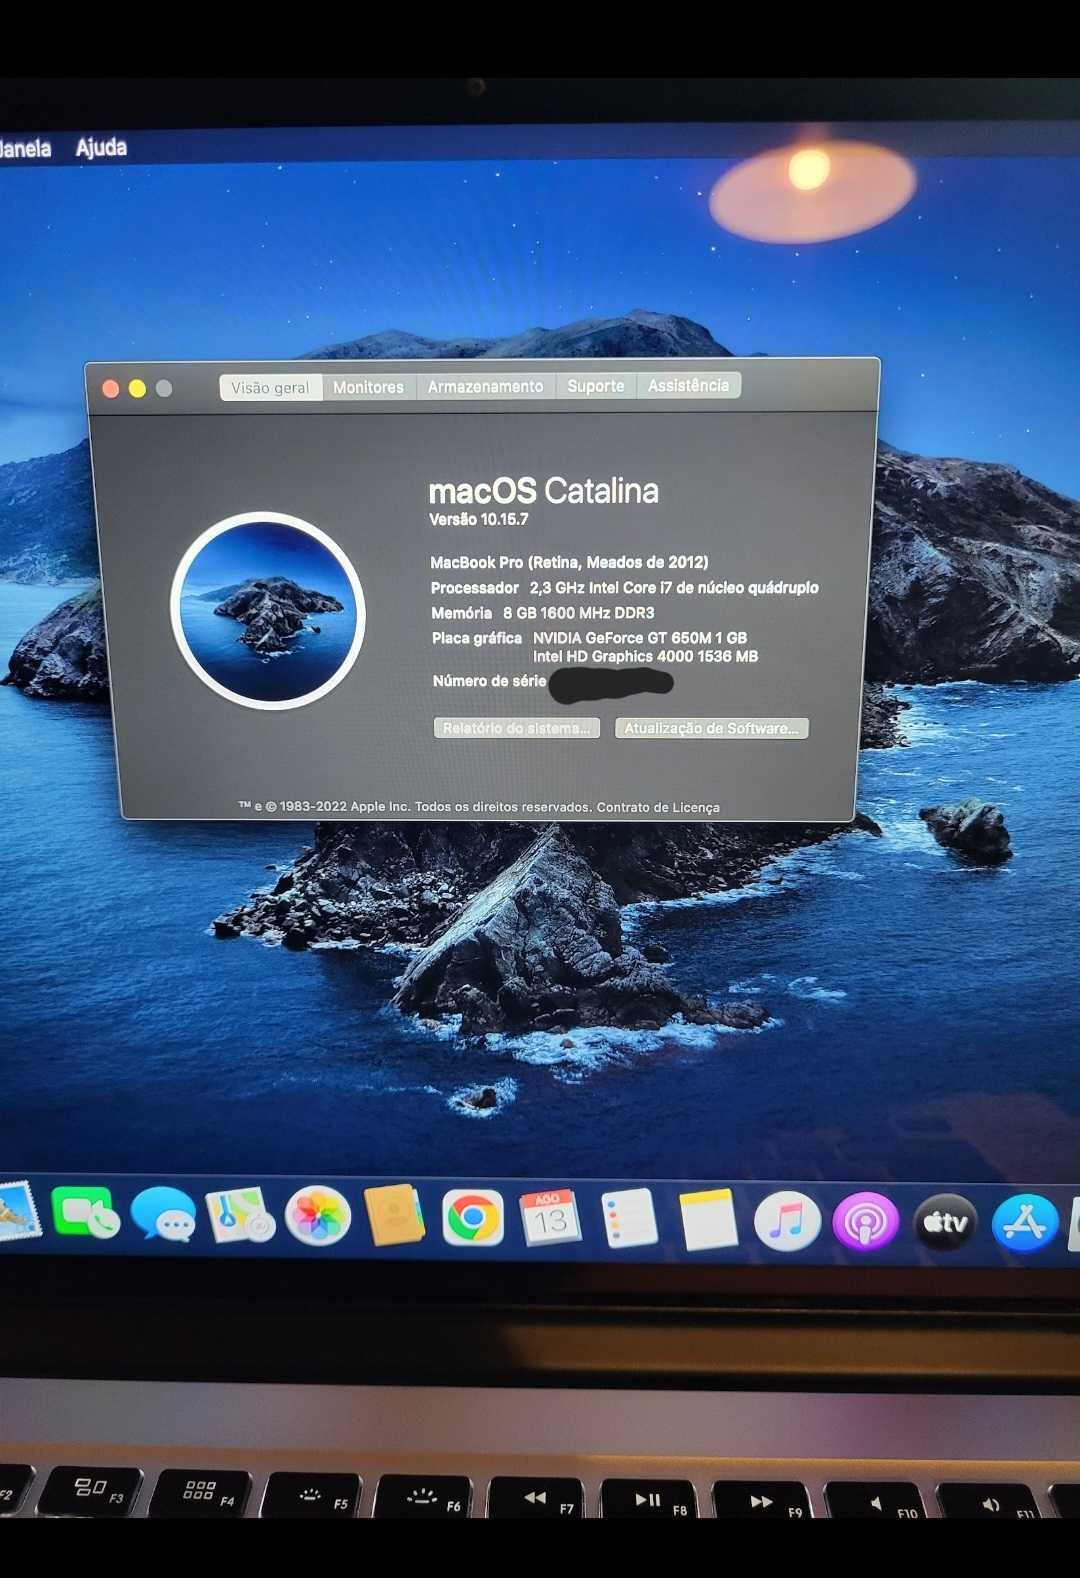 Macbook Pro 15" i7 Retina (Meados 2012)